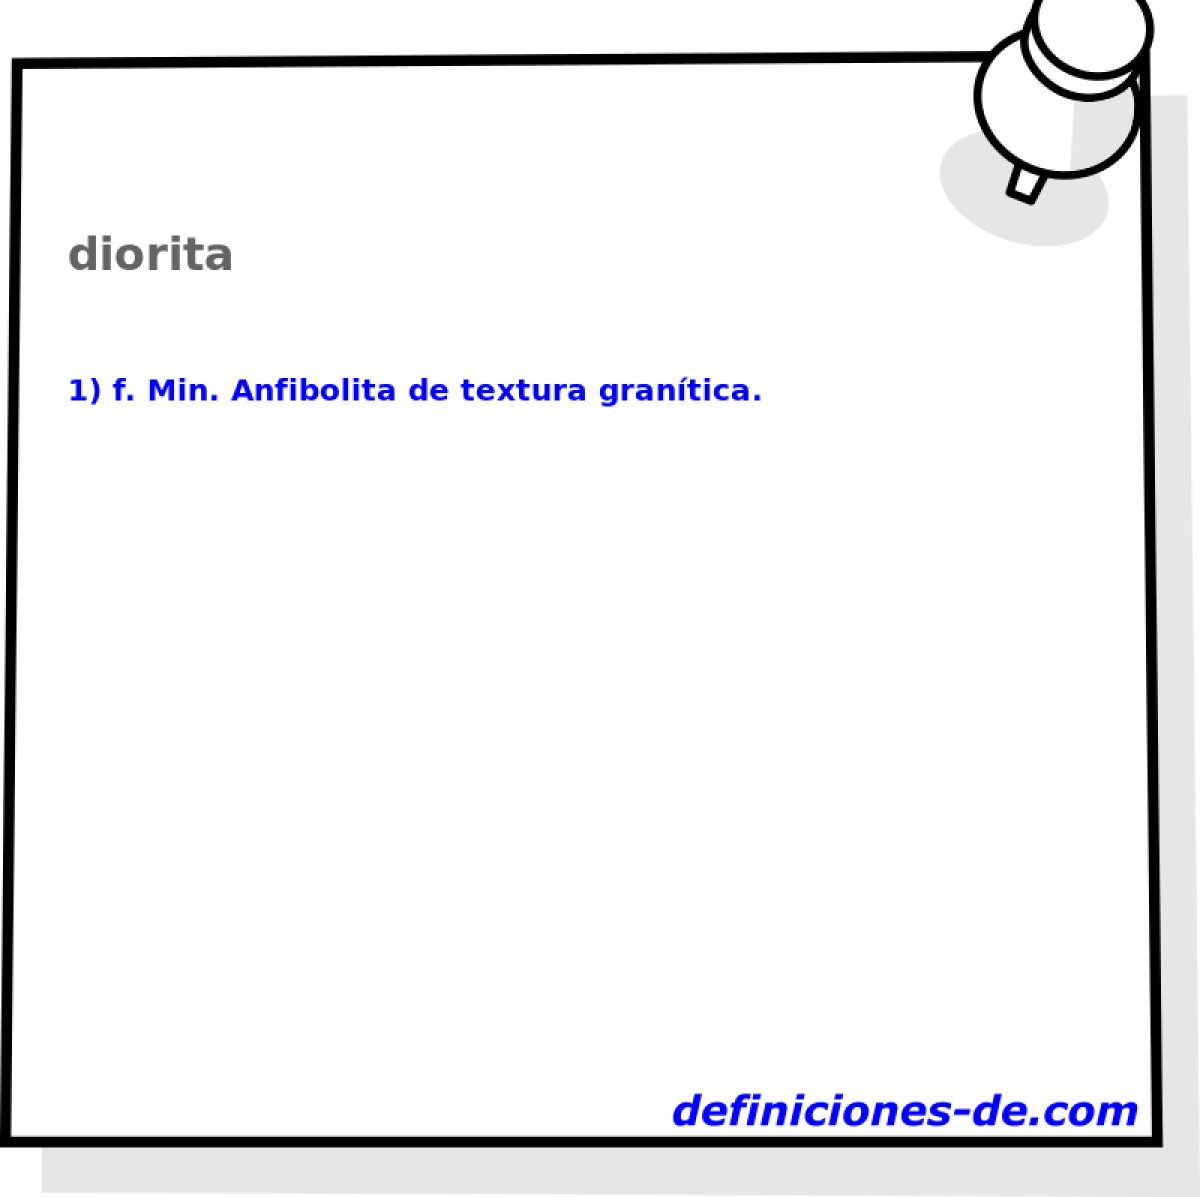 diorita 